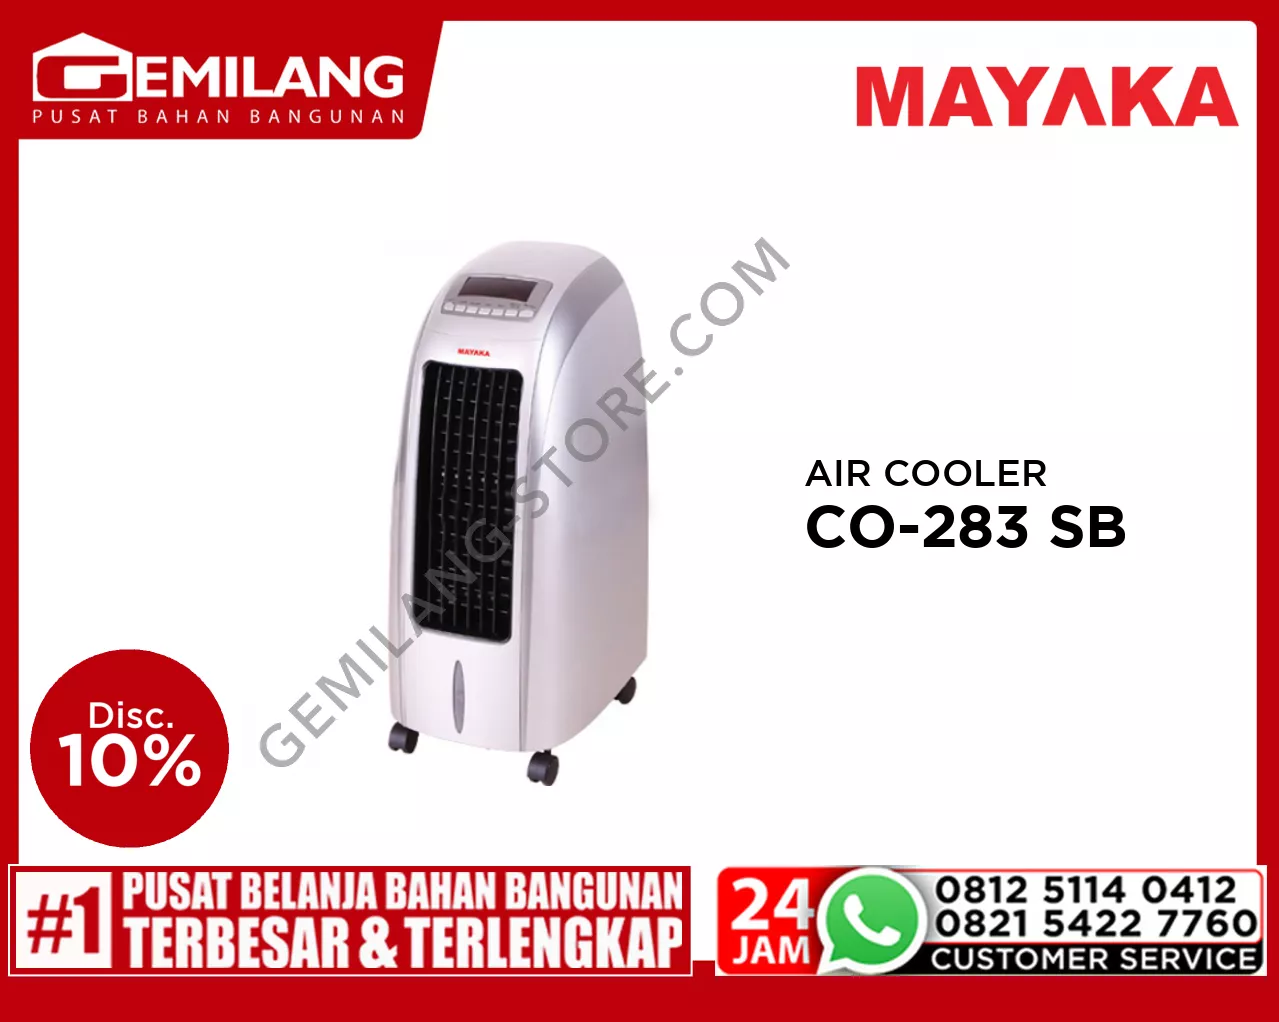 MAYAKA AIR COOLER CO-283 SB